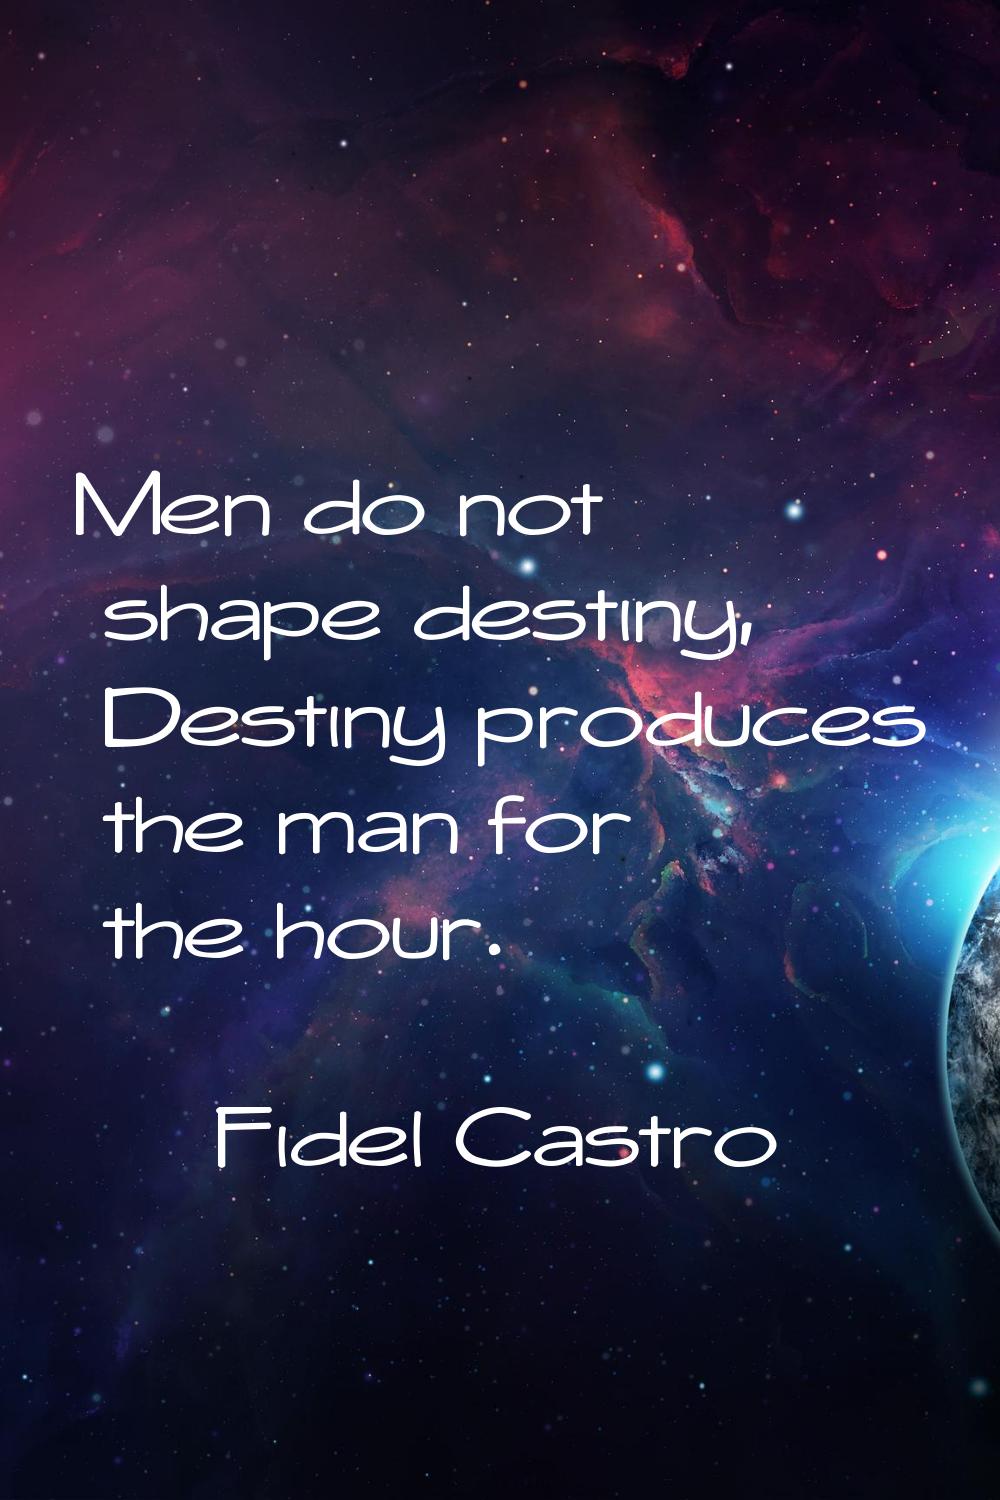 Men do not shape destiny, Destiny produces the man for the hour.